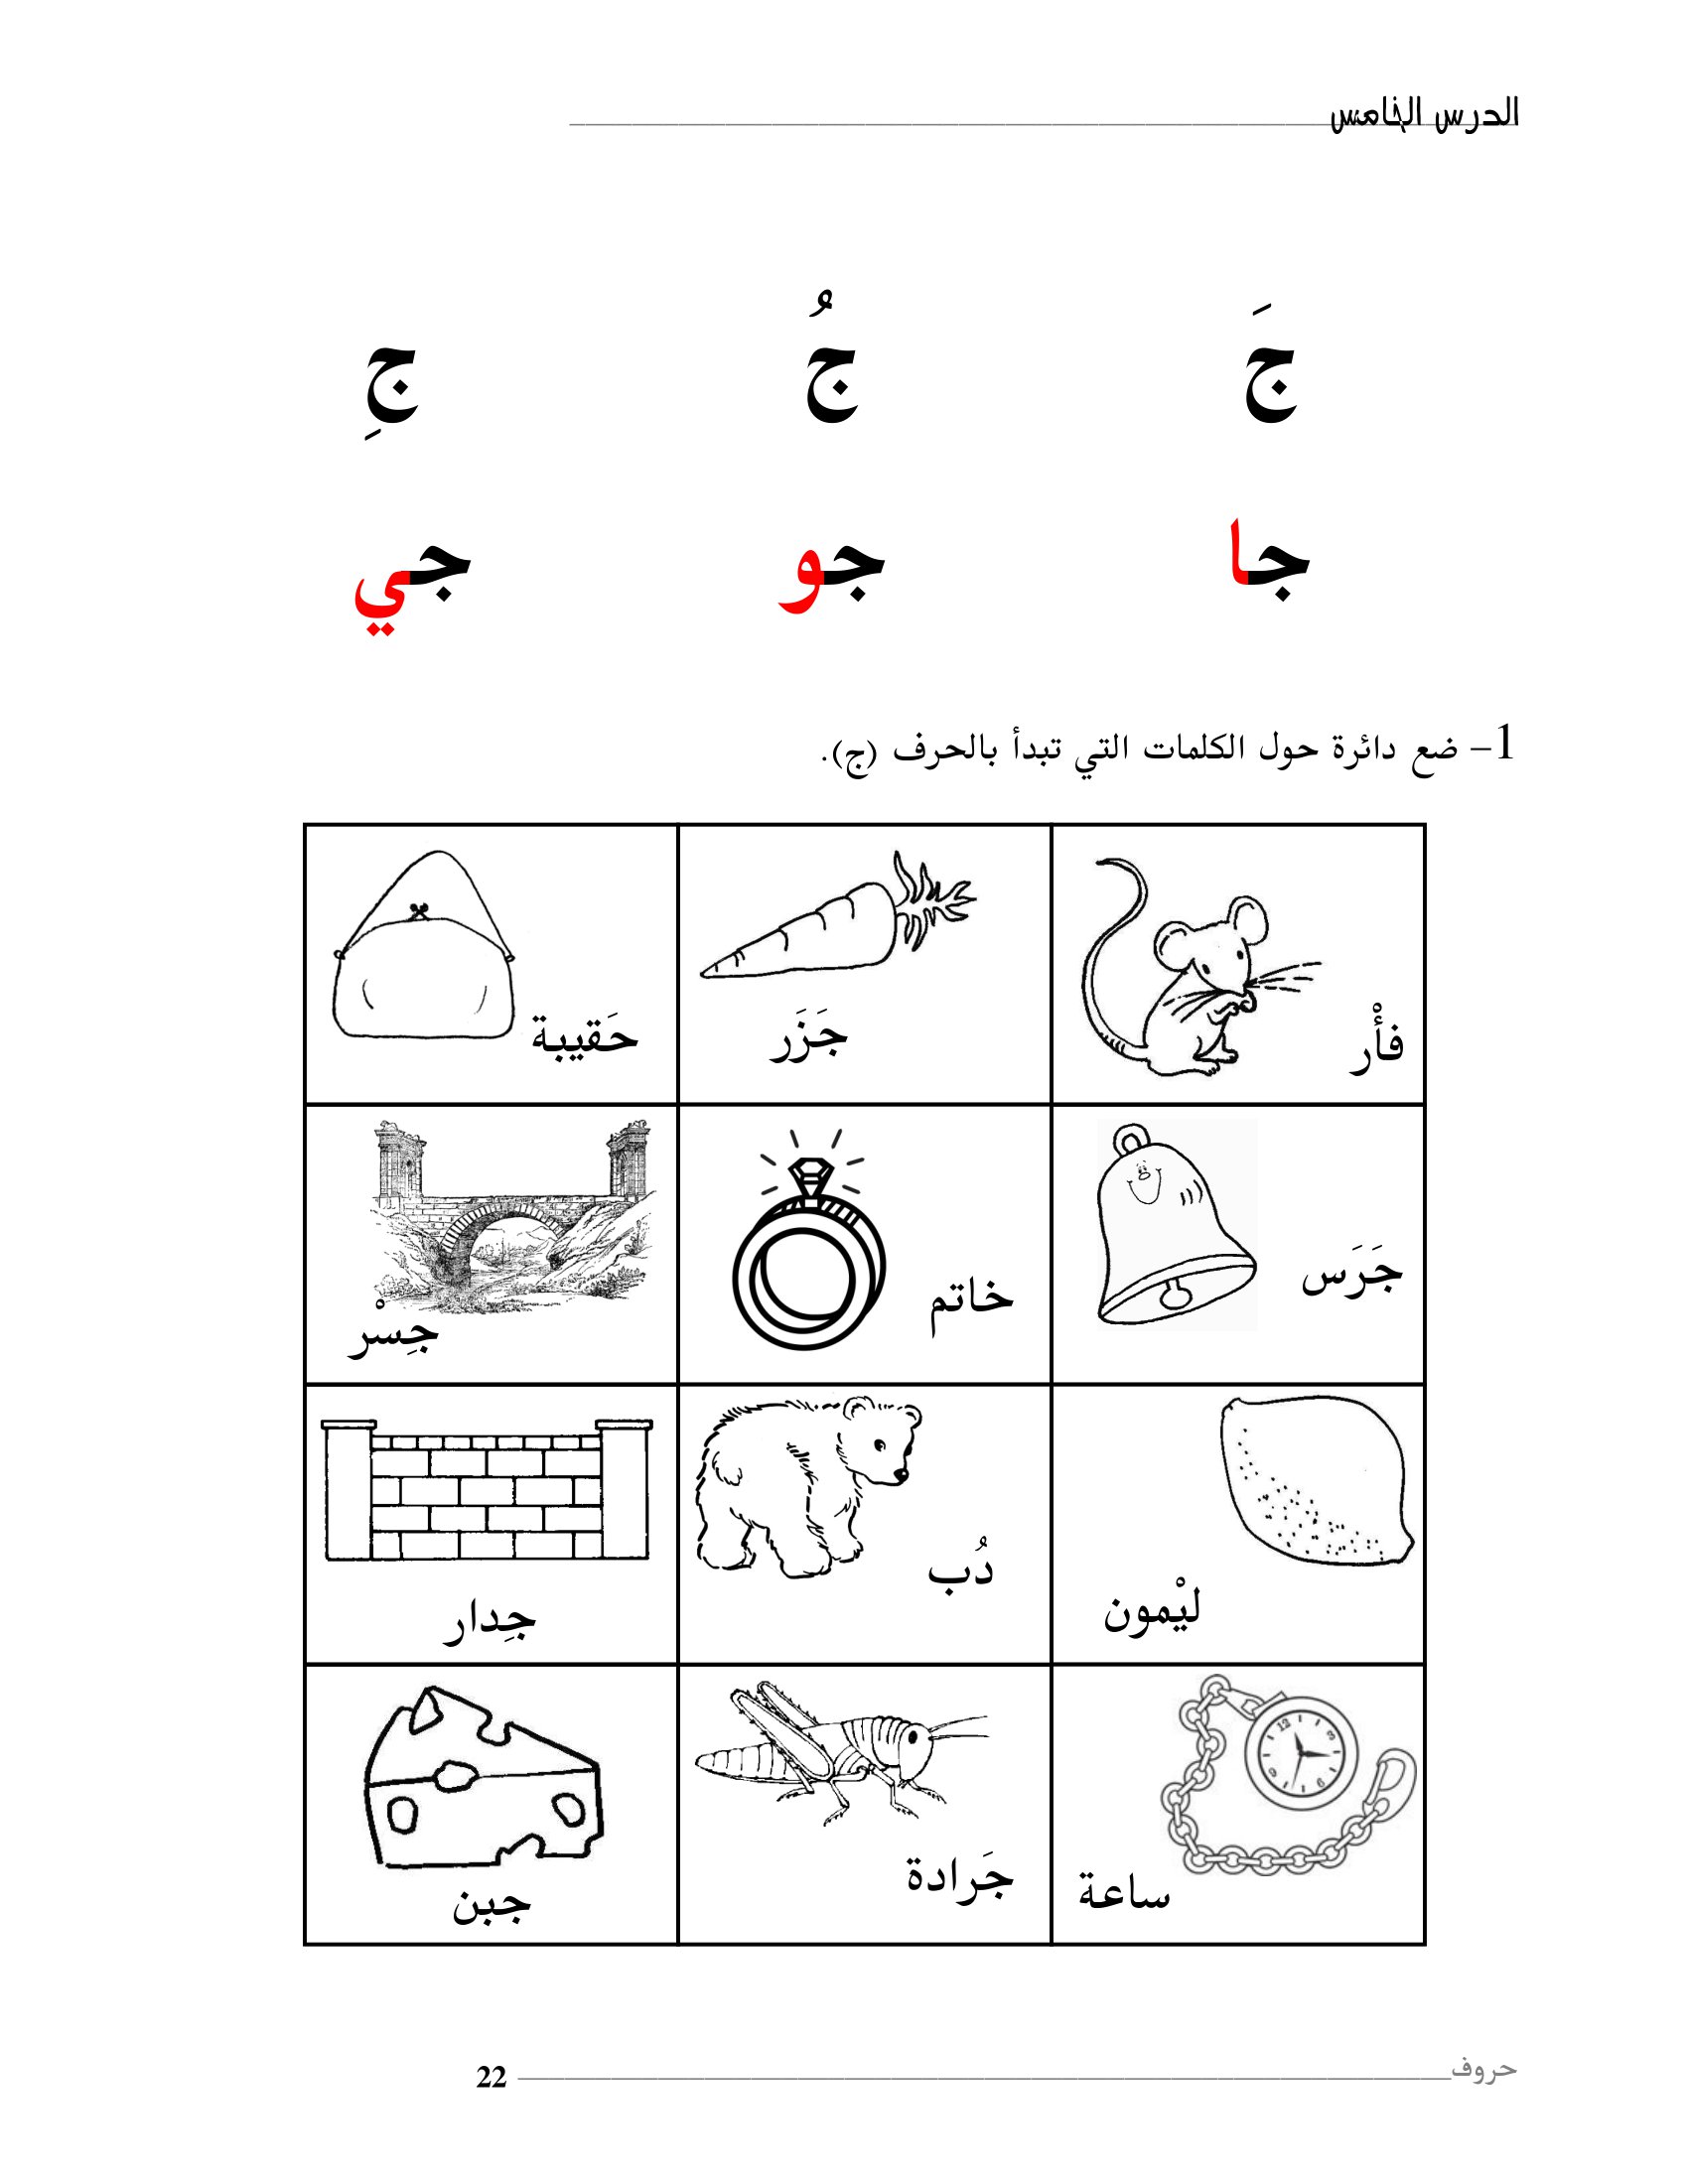 افضل كتاب لتعليم الحروف الهجائية العربية pdf تحميل مباشر